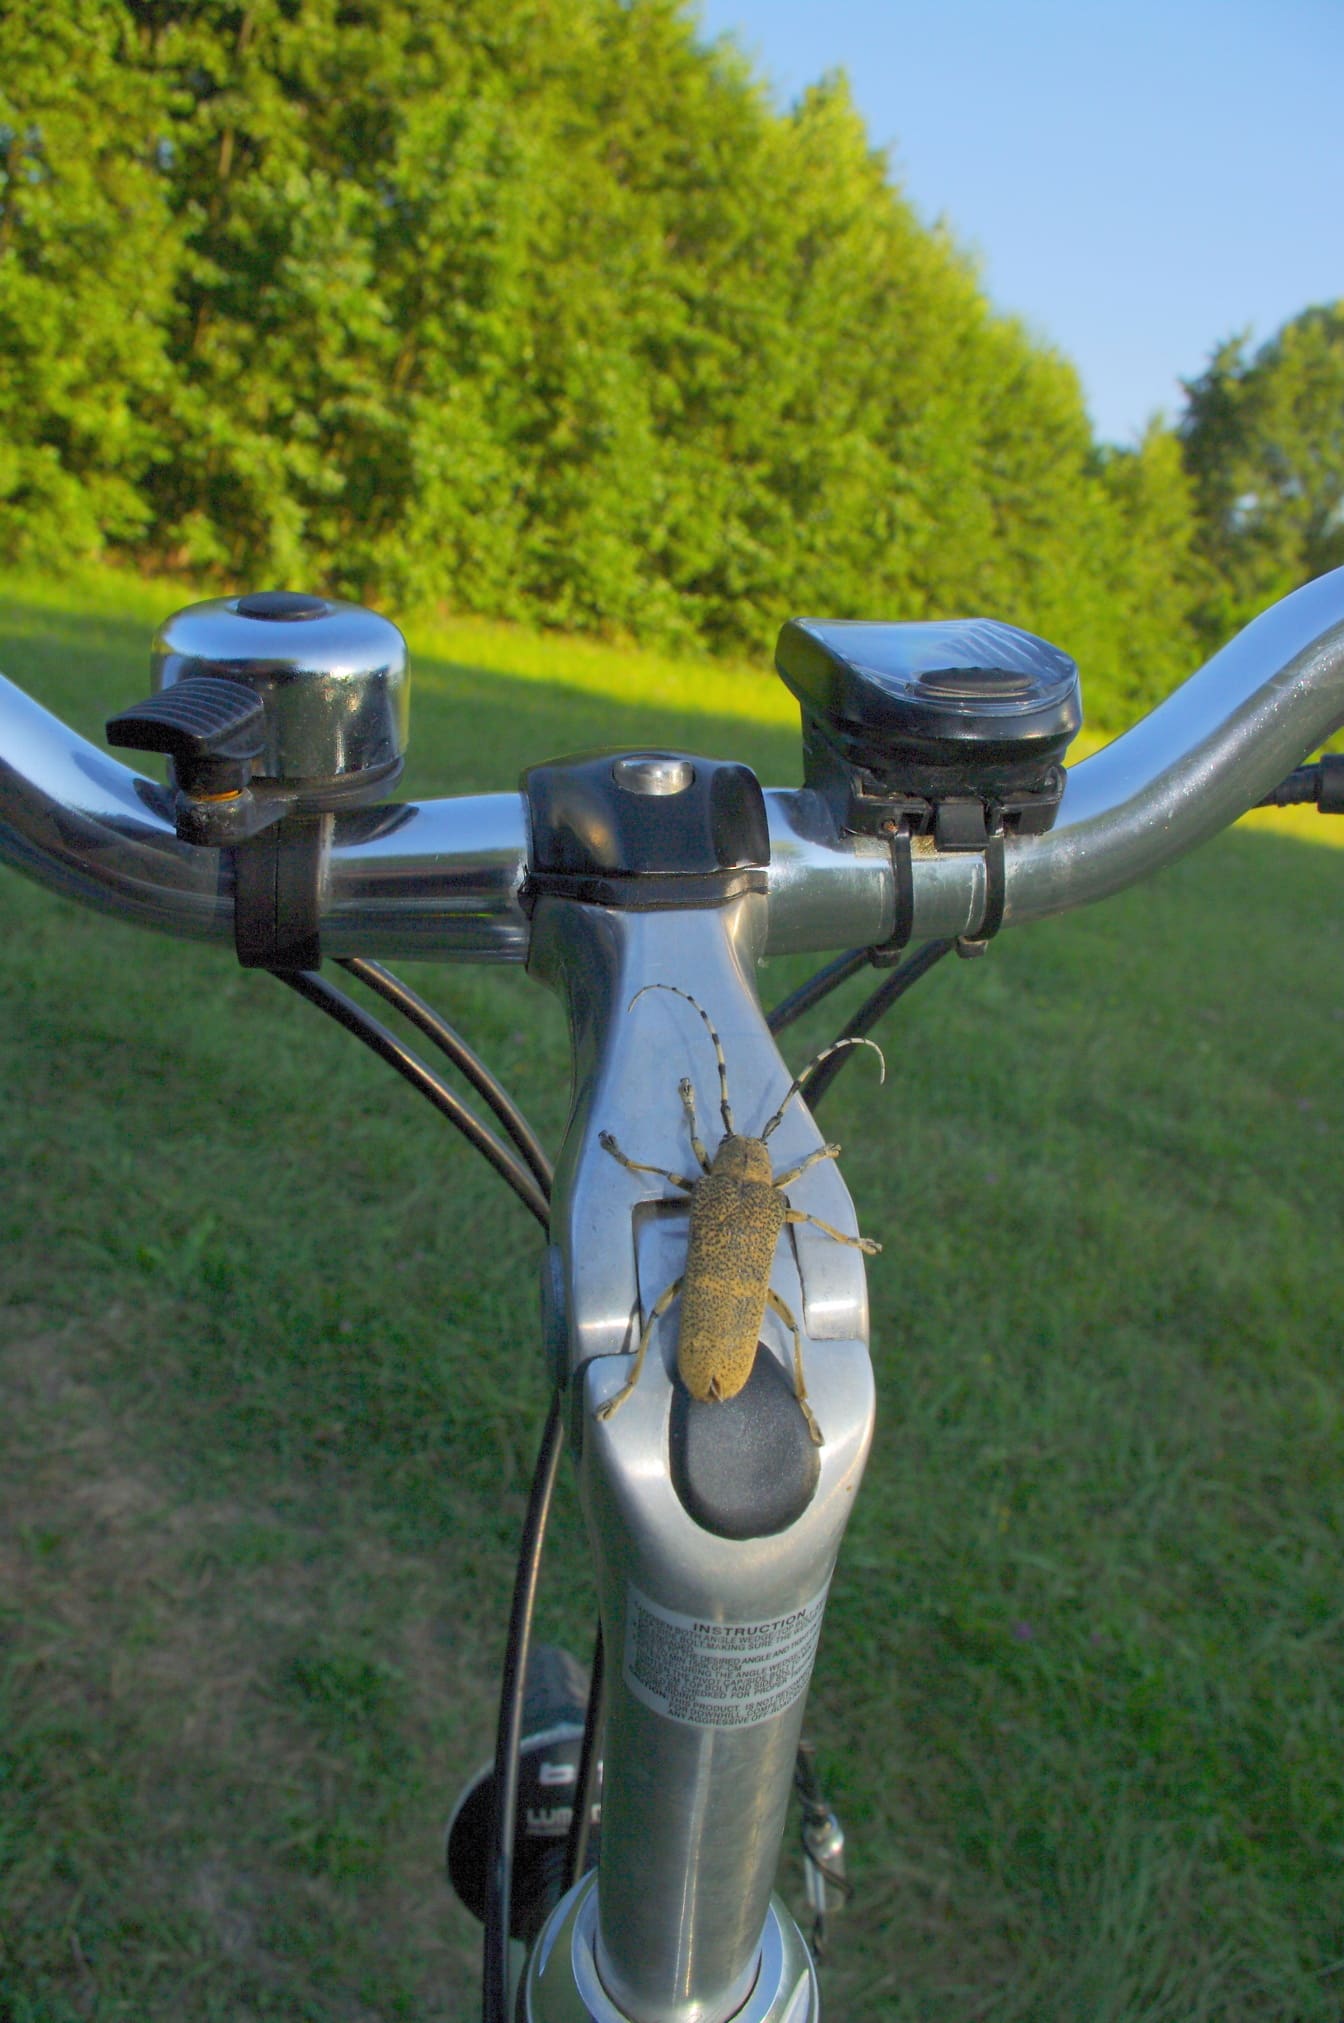 Μεγάλος τρυπητής λεύκας (Saperda carcharias) σκαθάρι στο τιμόνι του ποδηλάτου